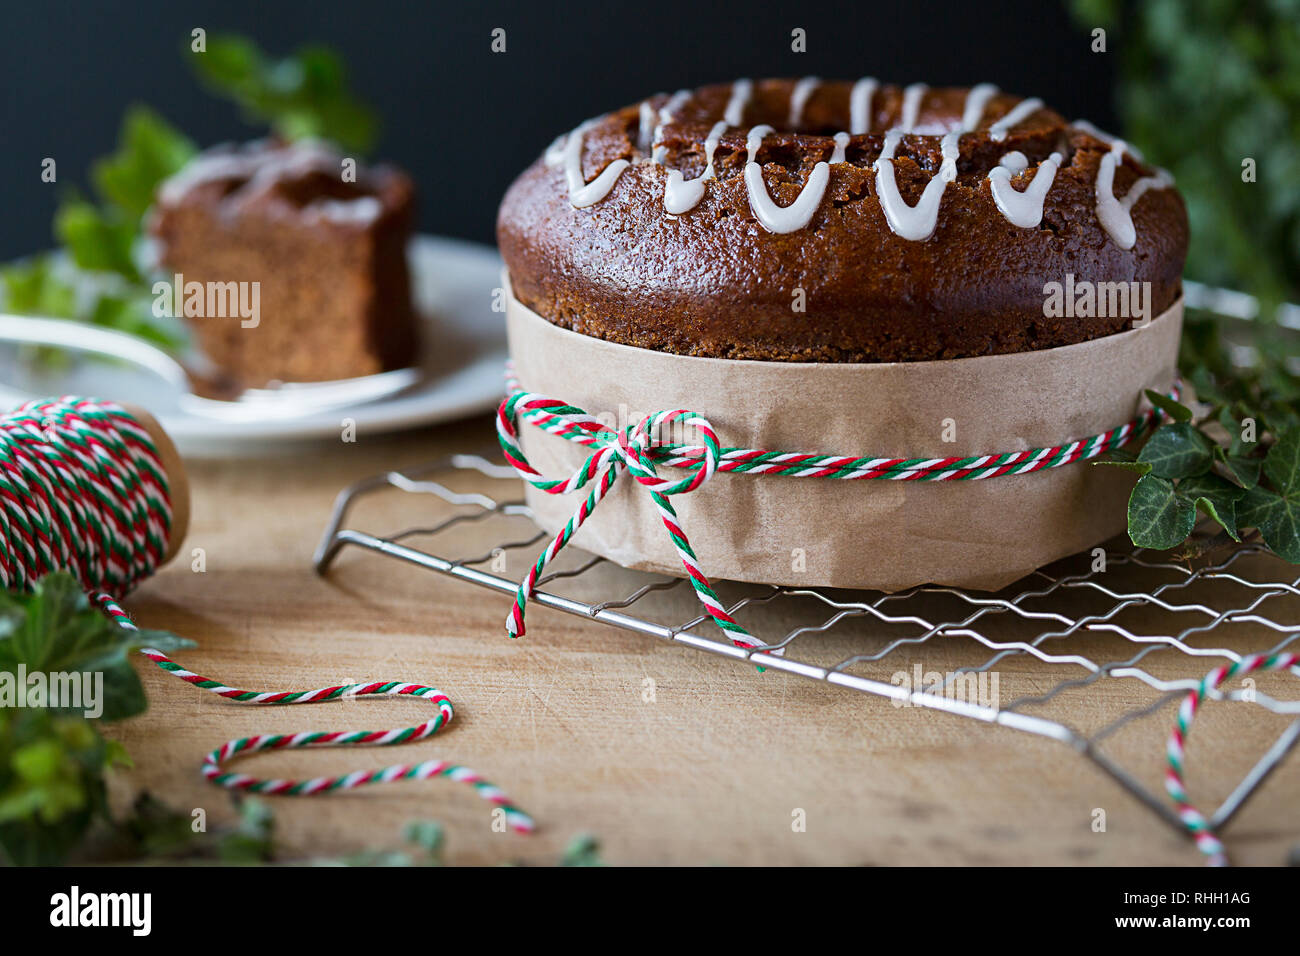 Vacances de Noël à la cannelle gâteau bundt épice, enveloppé comme un cadeau avec le rouge, le blanc et le vert de la ficelle et du papier brun, sur grille de refroidissement sur le bois. Banque D'Images